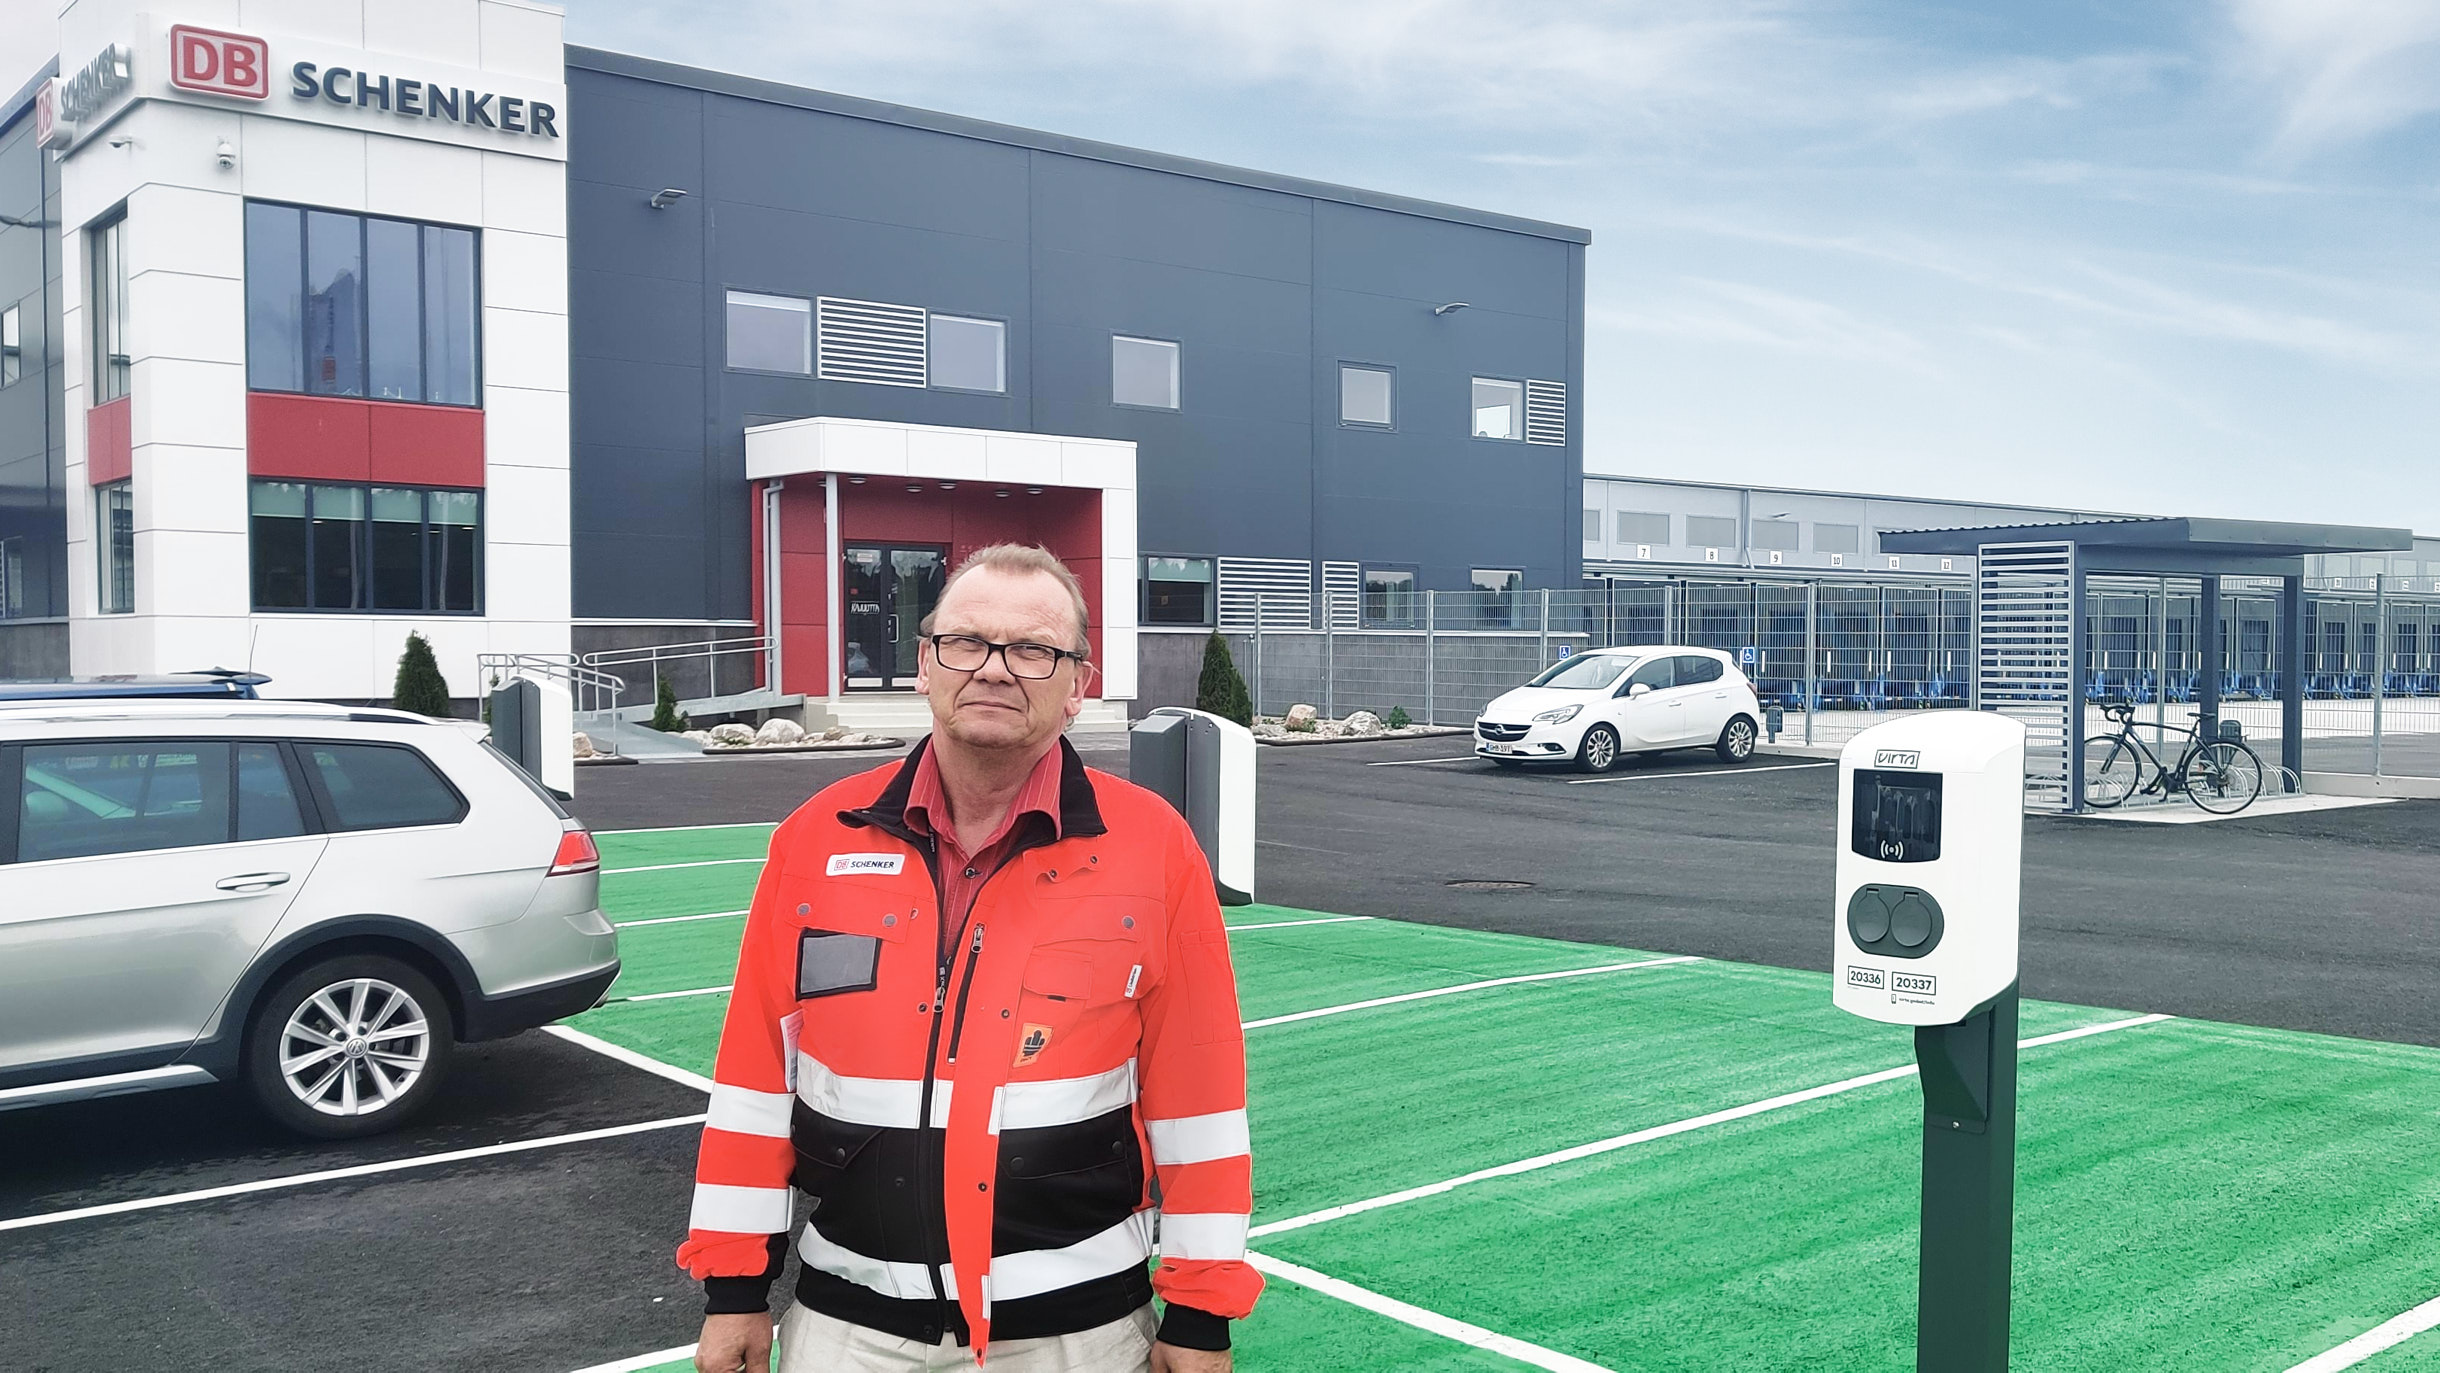 DB Schenker - Le leader de la logistique se lance dans la mobilité décarboné